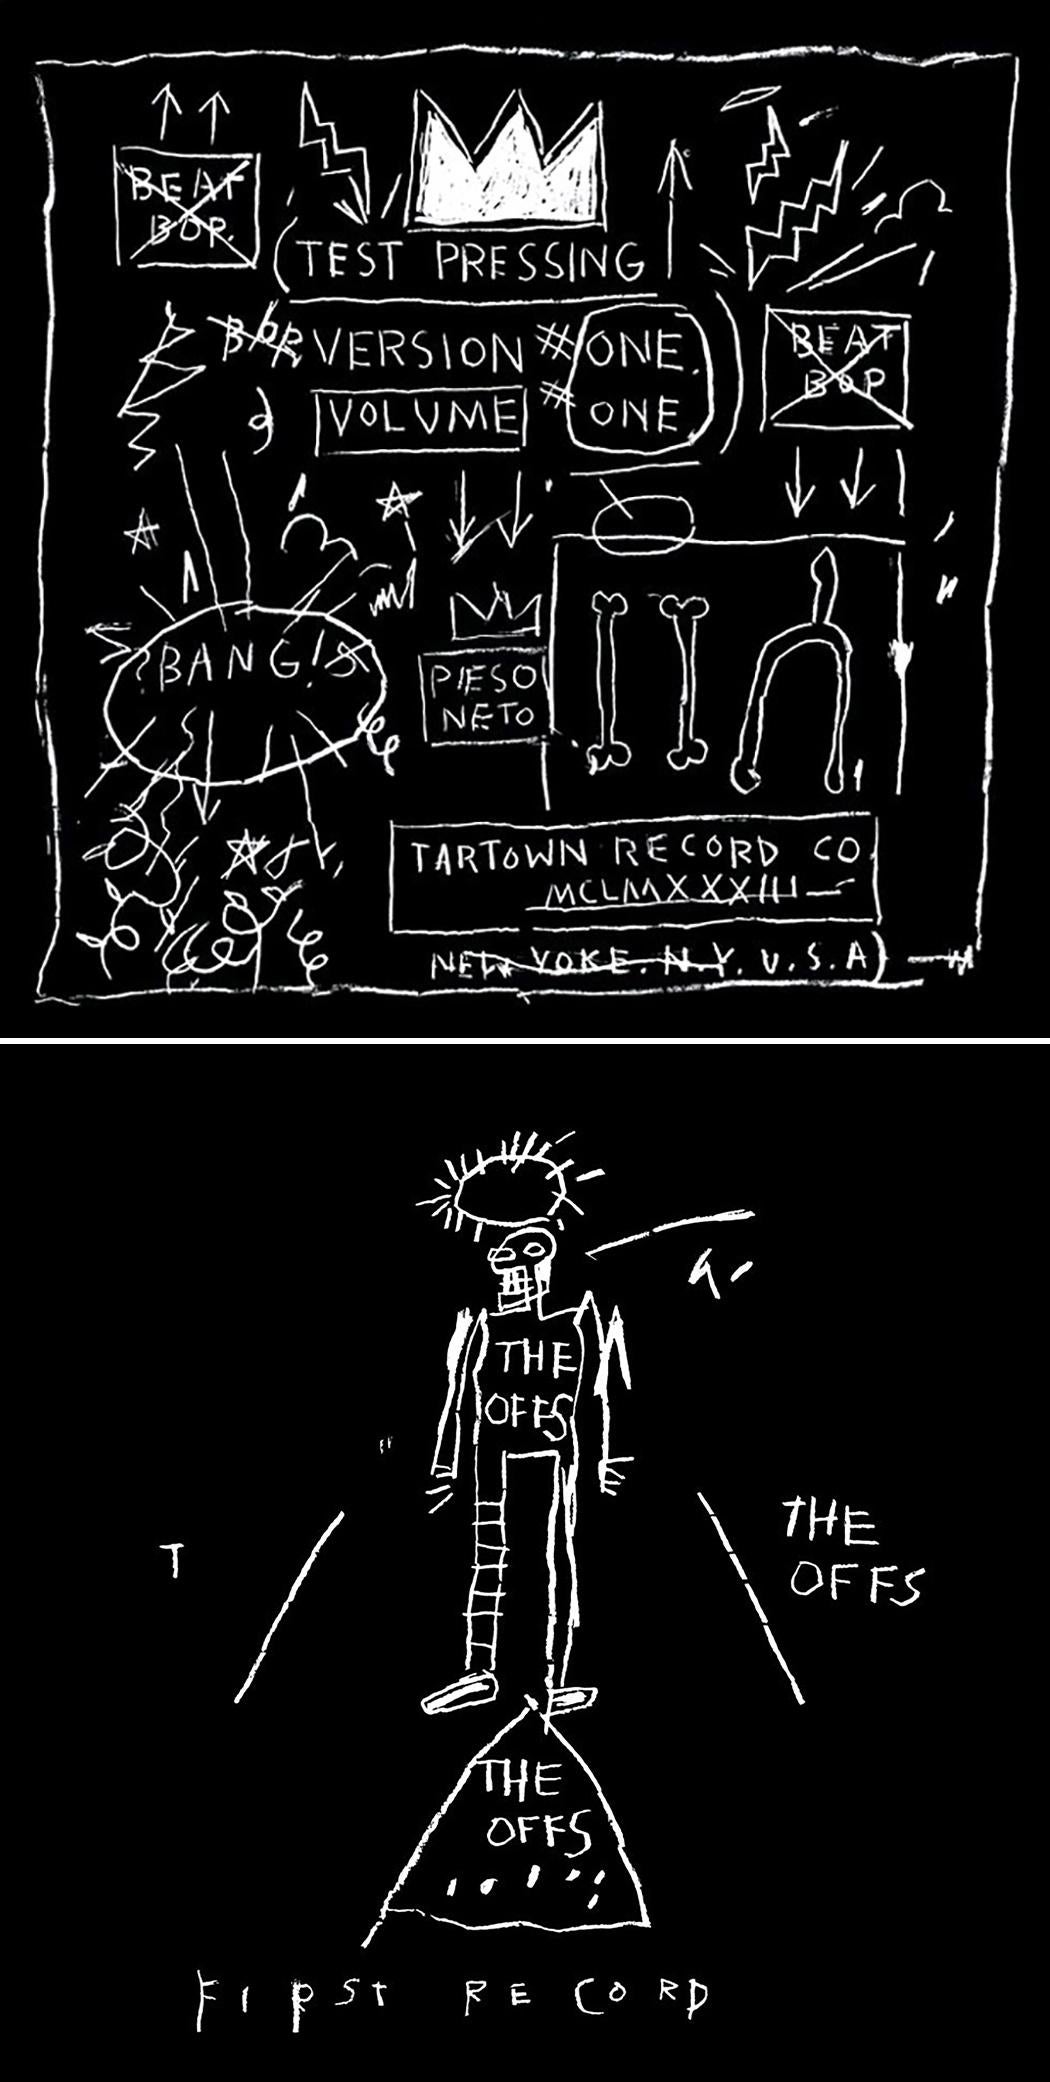 Record Art Basquiat The Offs Basquiat Beat Bop (Basquiat The Offs Basquiat Beat Bop)  - Mixed Media Art de after Jean-Michel Basquiat